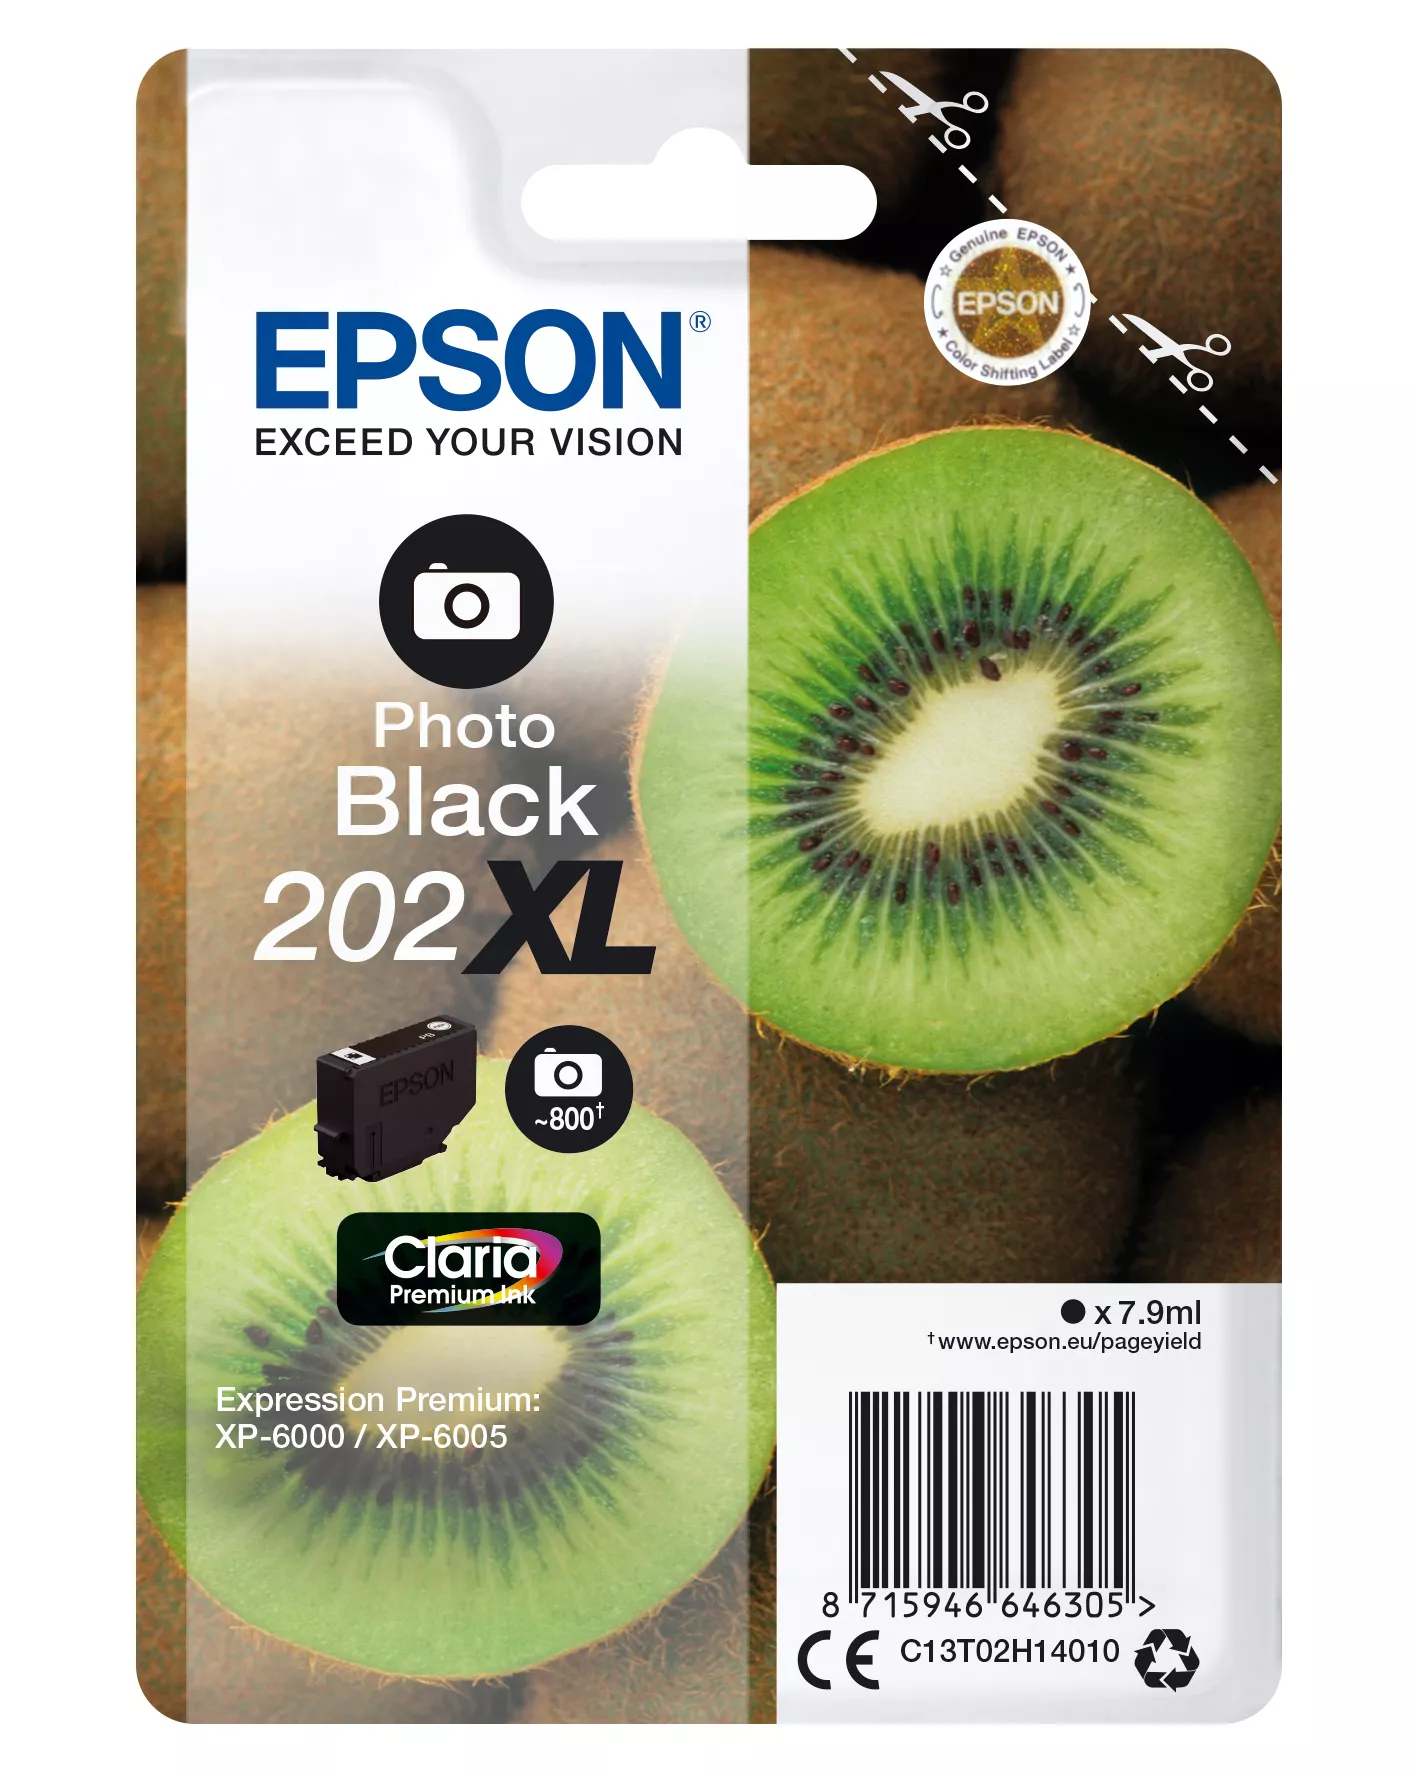 Achat EPSON Encre Claria Premium - Cartouche Kiwi 202 Noir - 8715946646305